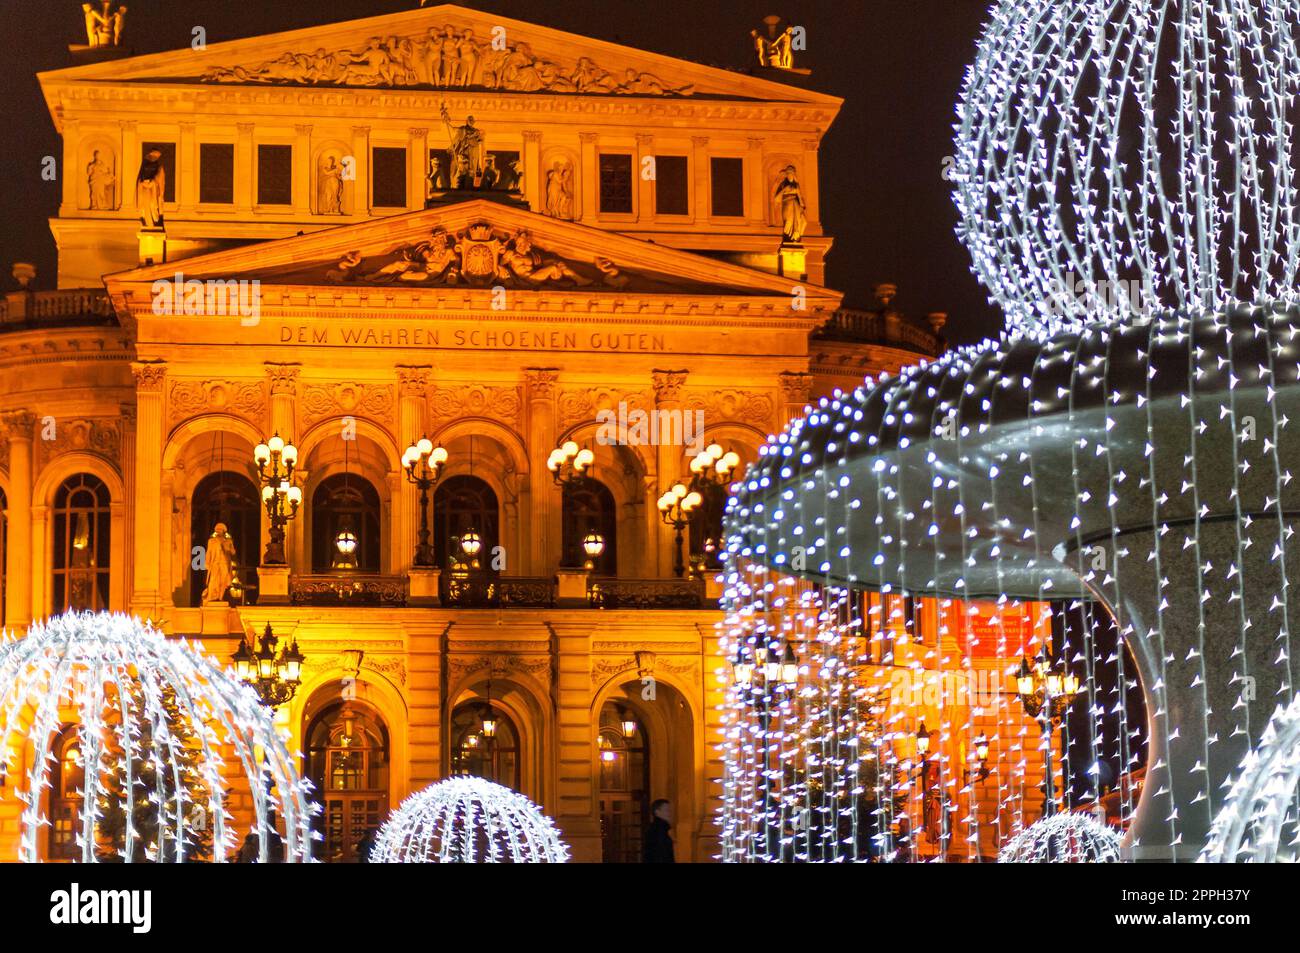 El punto de referencia 'Alte Oper' en Fráncfort del Meno con iluminación nocturna y el 'Lucaebrunen' con iluminación navideña festiva fotografiado desde un lugar público Foto de stock